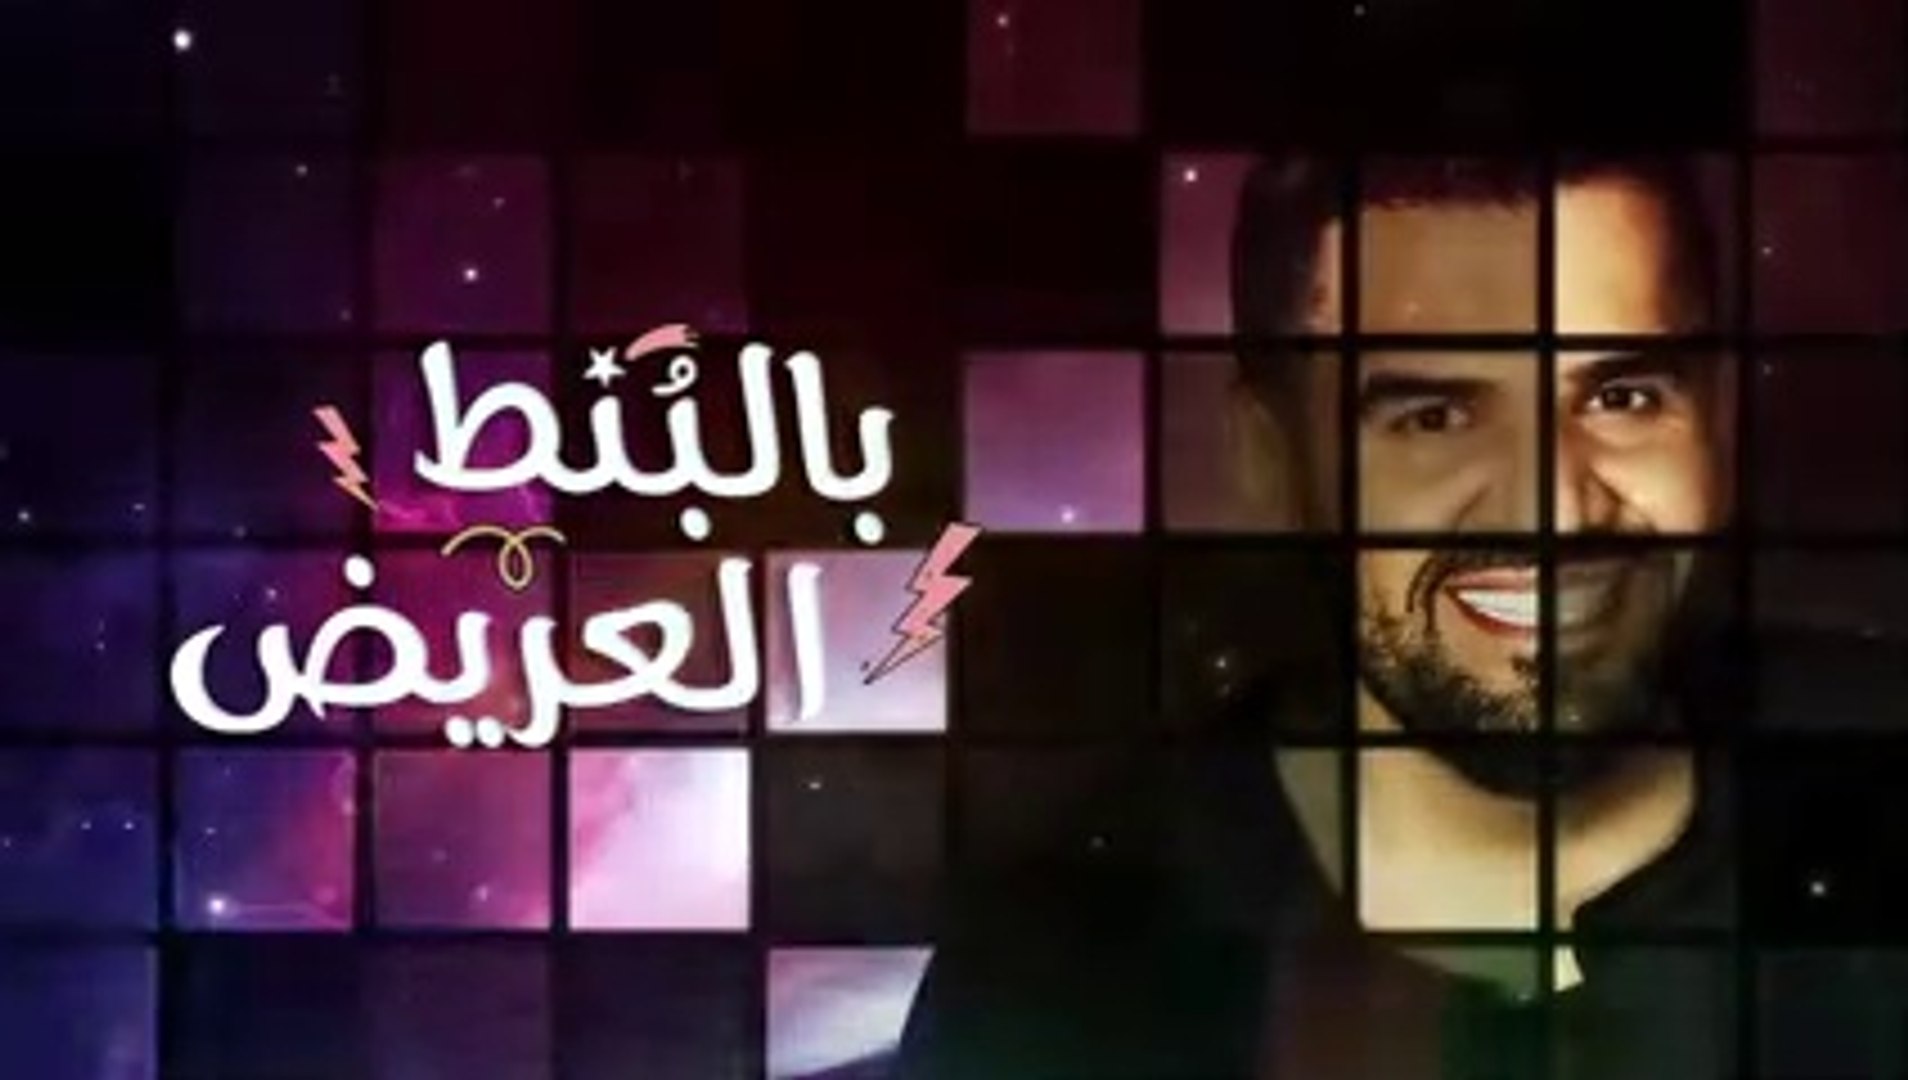 جديد أغنية حسين الجسمي - بالبنط العريض (حصرياً) - 2020 - video Dailymotion